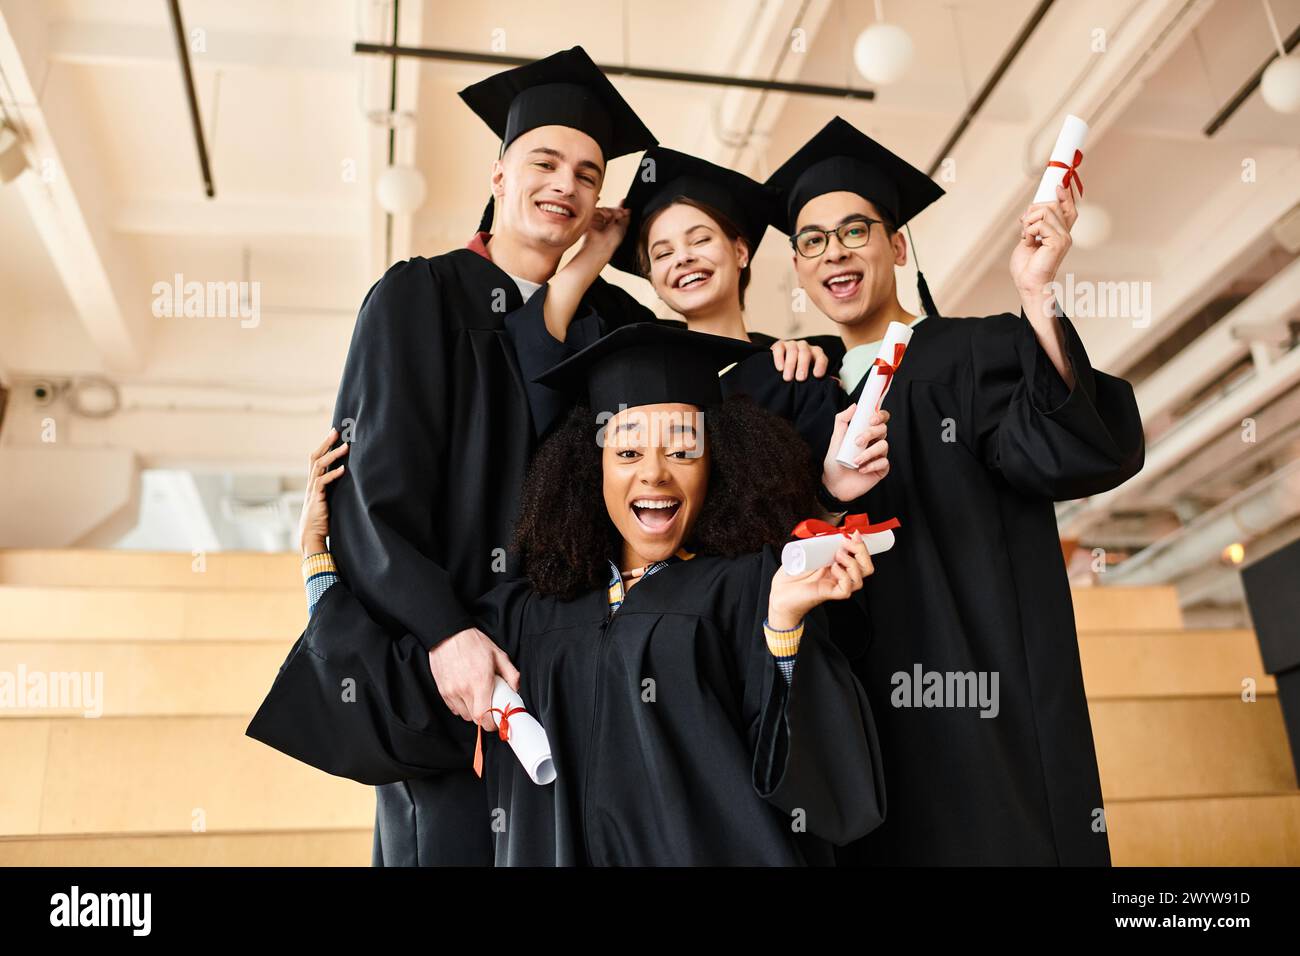 Eine vielfältige Gruppe von Studenten in Abschlusskleidern posiert mit akademischen Kappen für ein unvergessliches Bild ihrer Leistung. Stockfoto